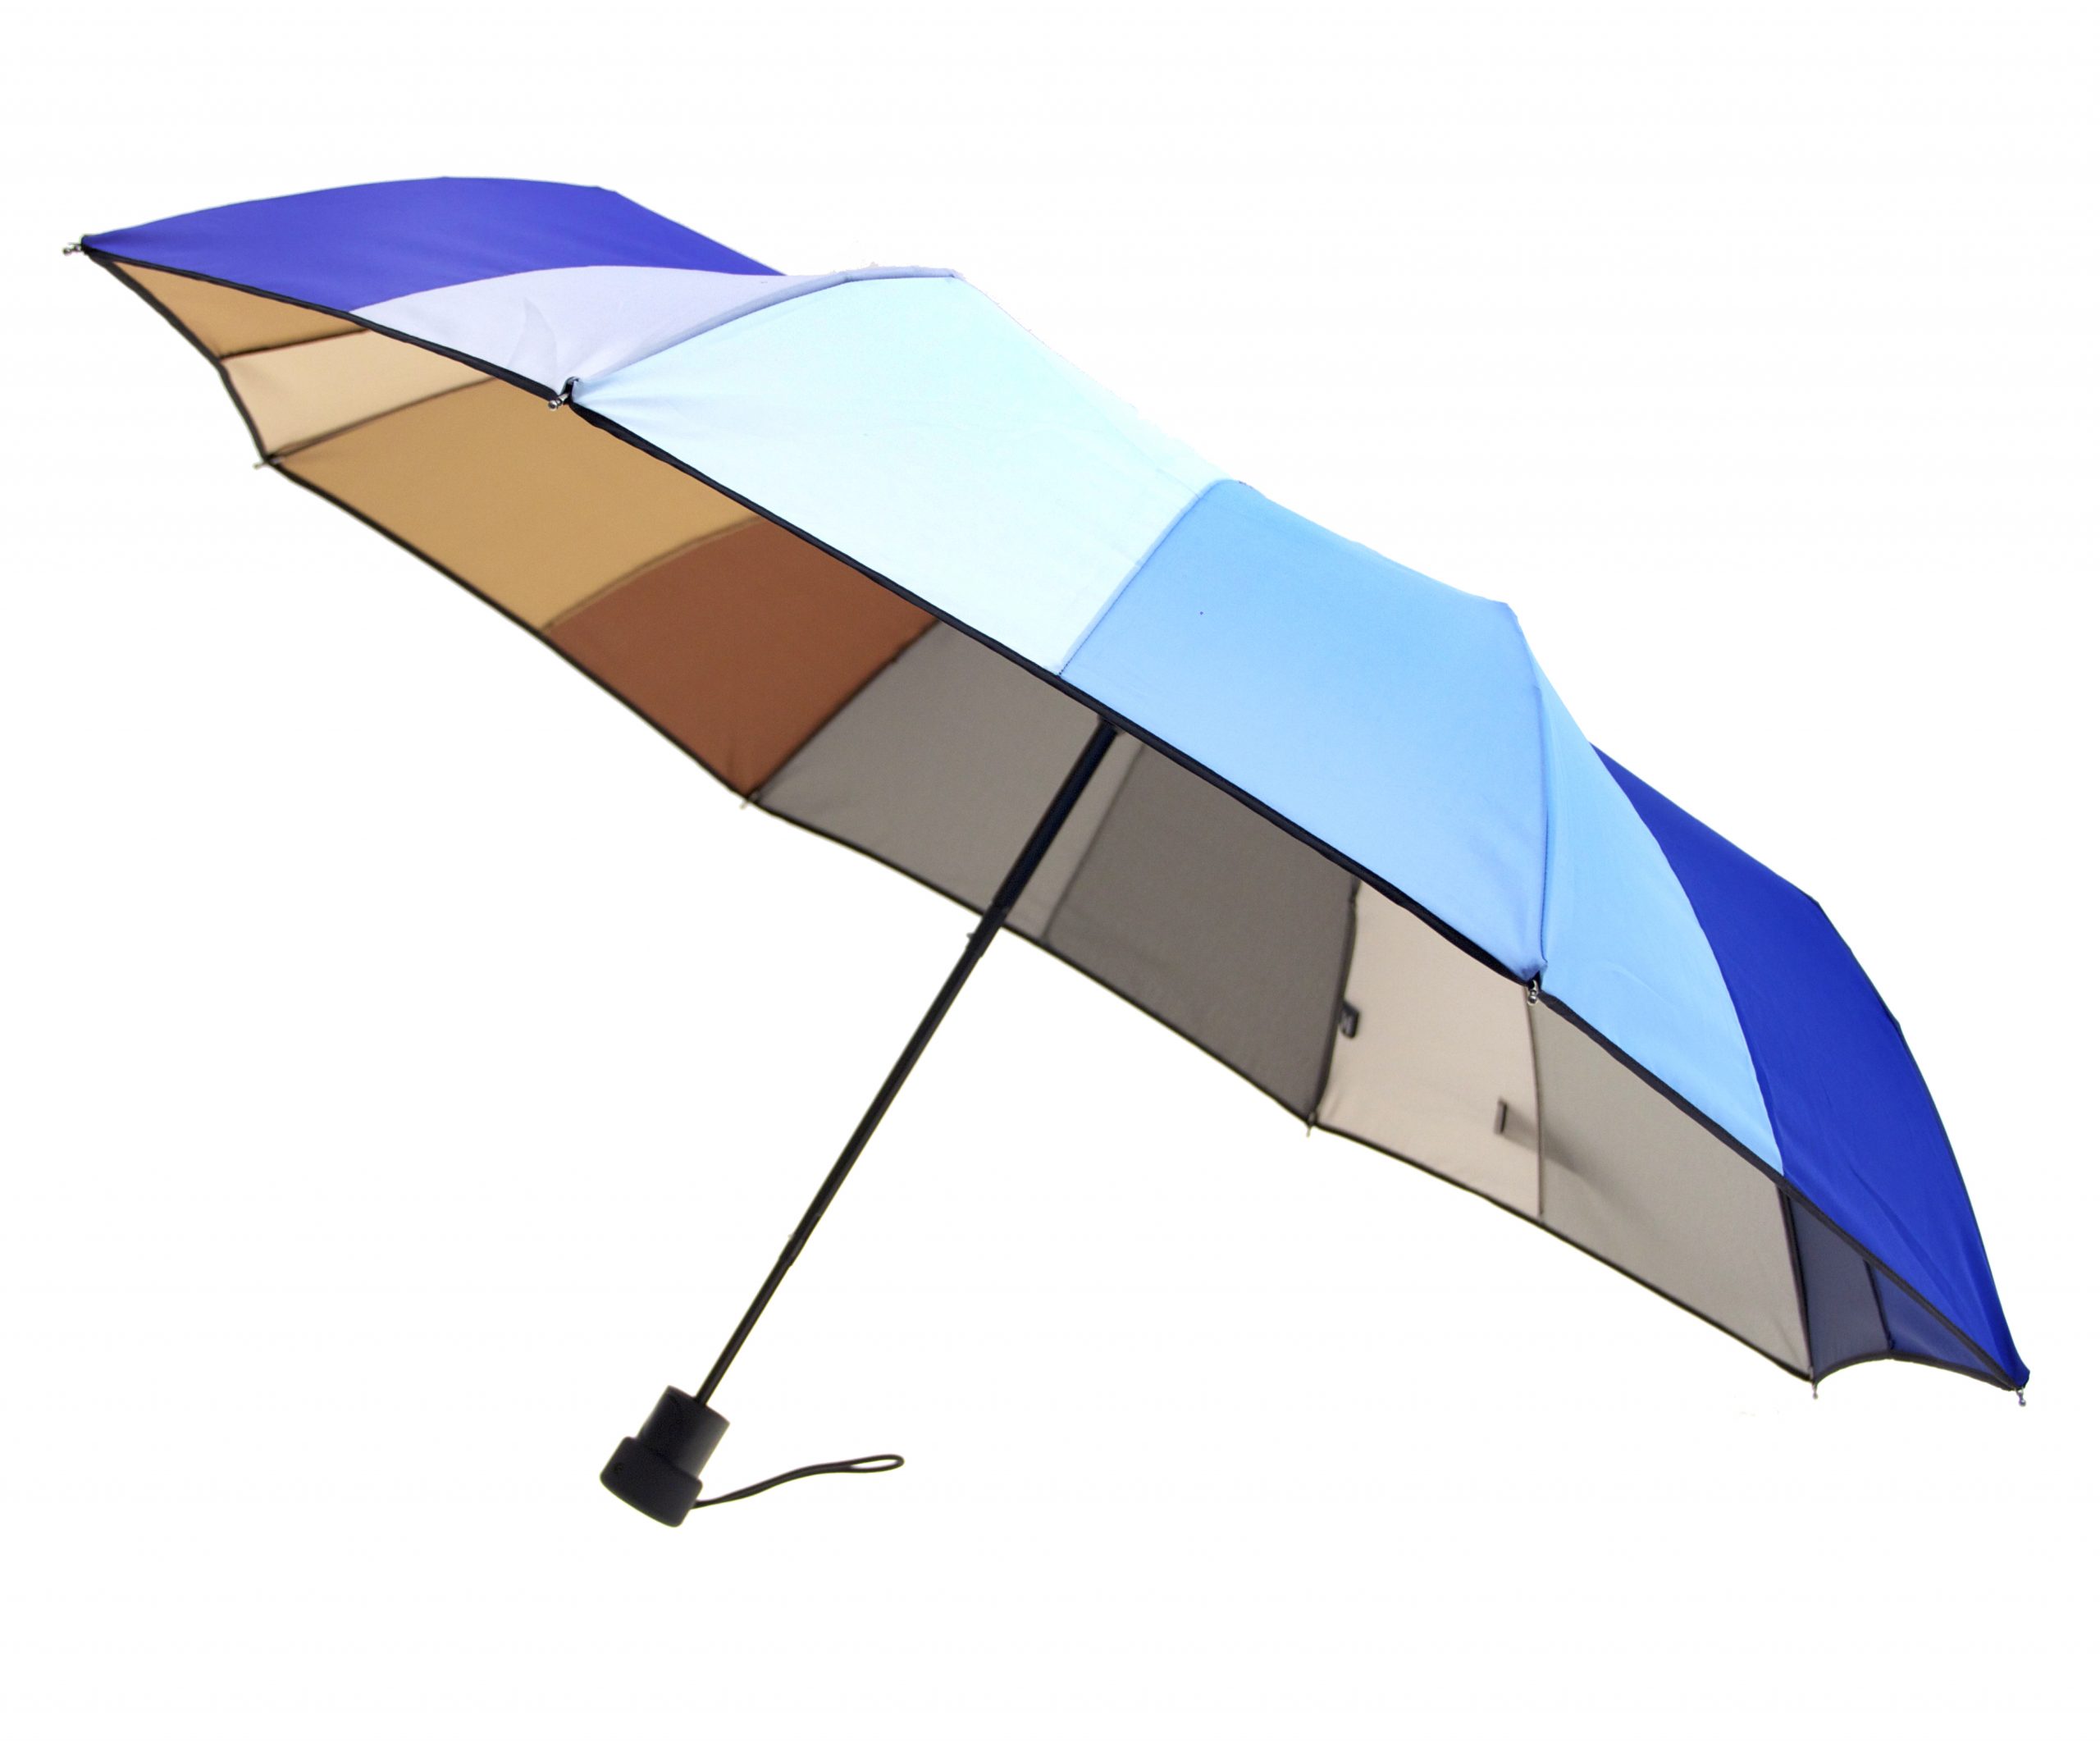 Umbrella Fabric Colors